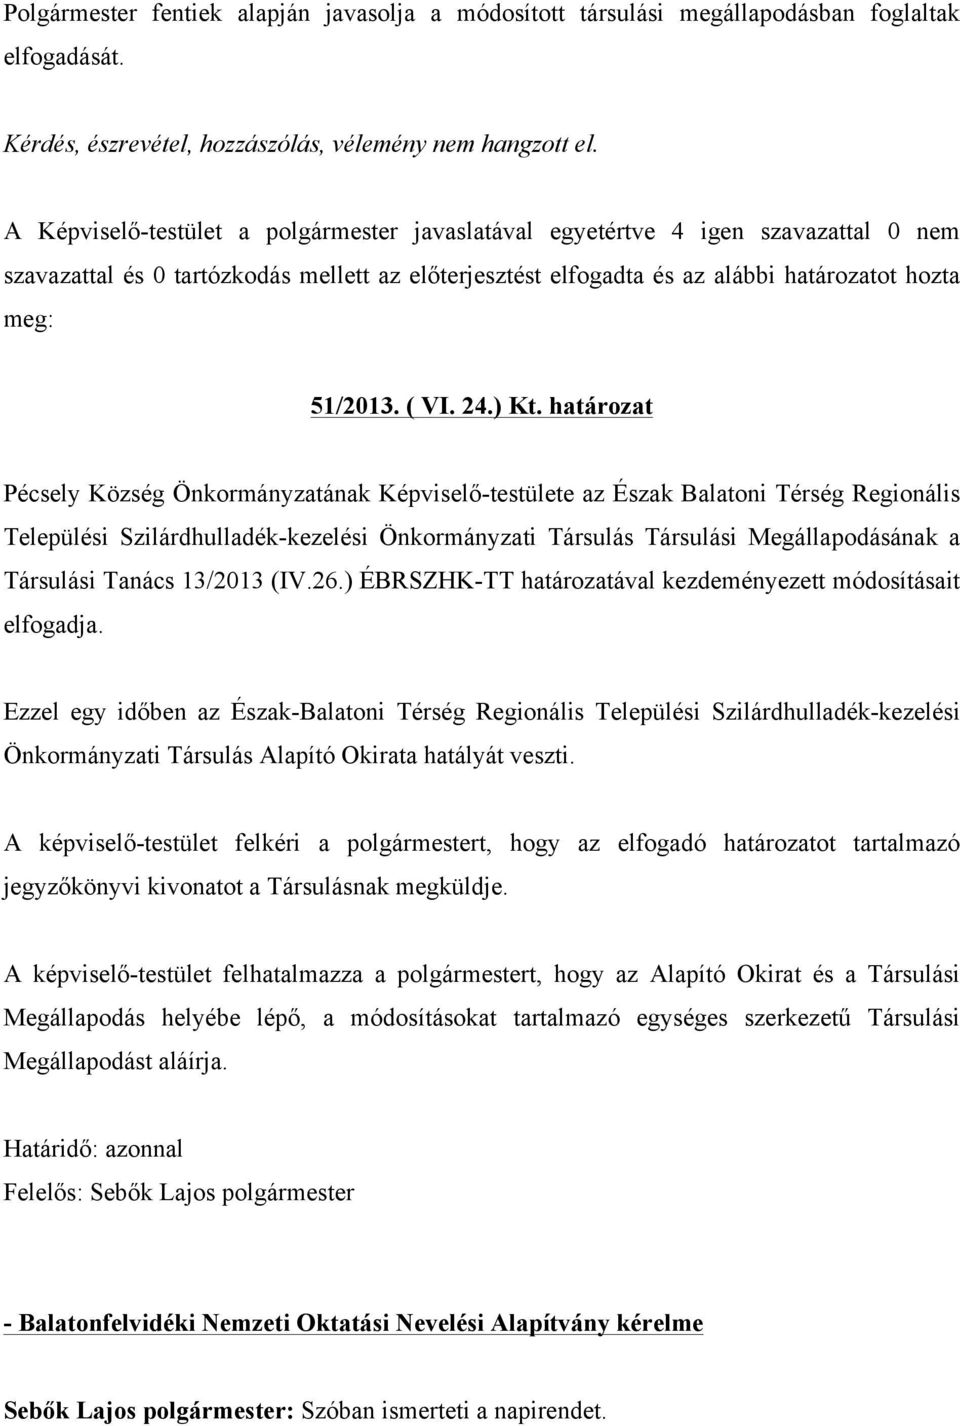 Tanács 13/2013 (IV.26.) ÉBRSZHK-TT határozatával kezdeményezett módosításait elfogadja.